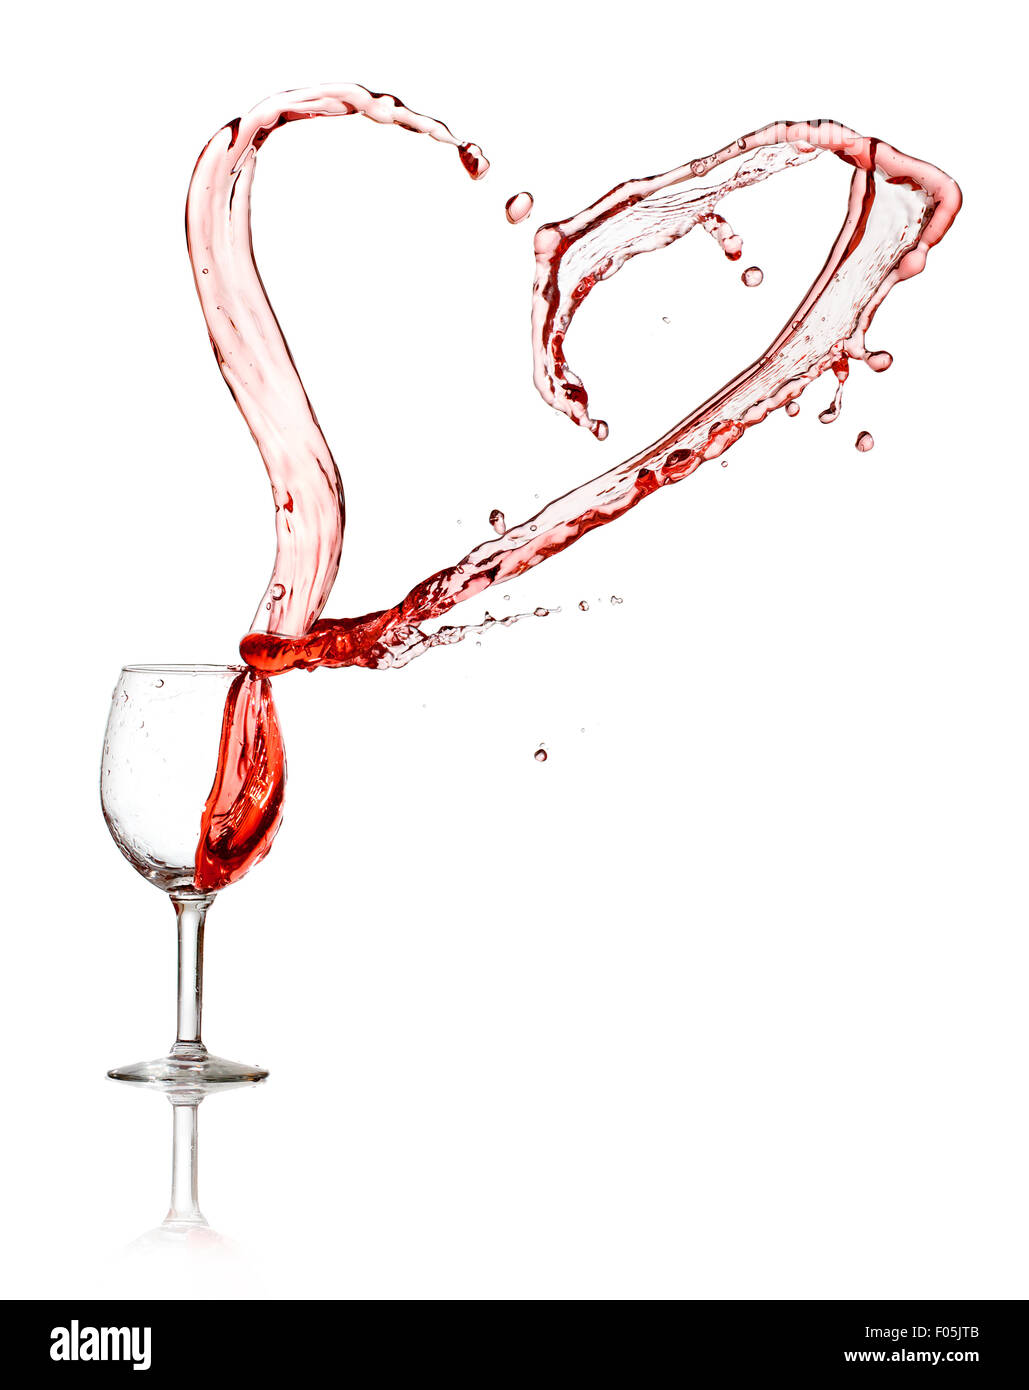 Herz Spritzen aus einem Glas Rotwein isoliert auf weißem Hintergrund  Stockfotografie - Alamy